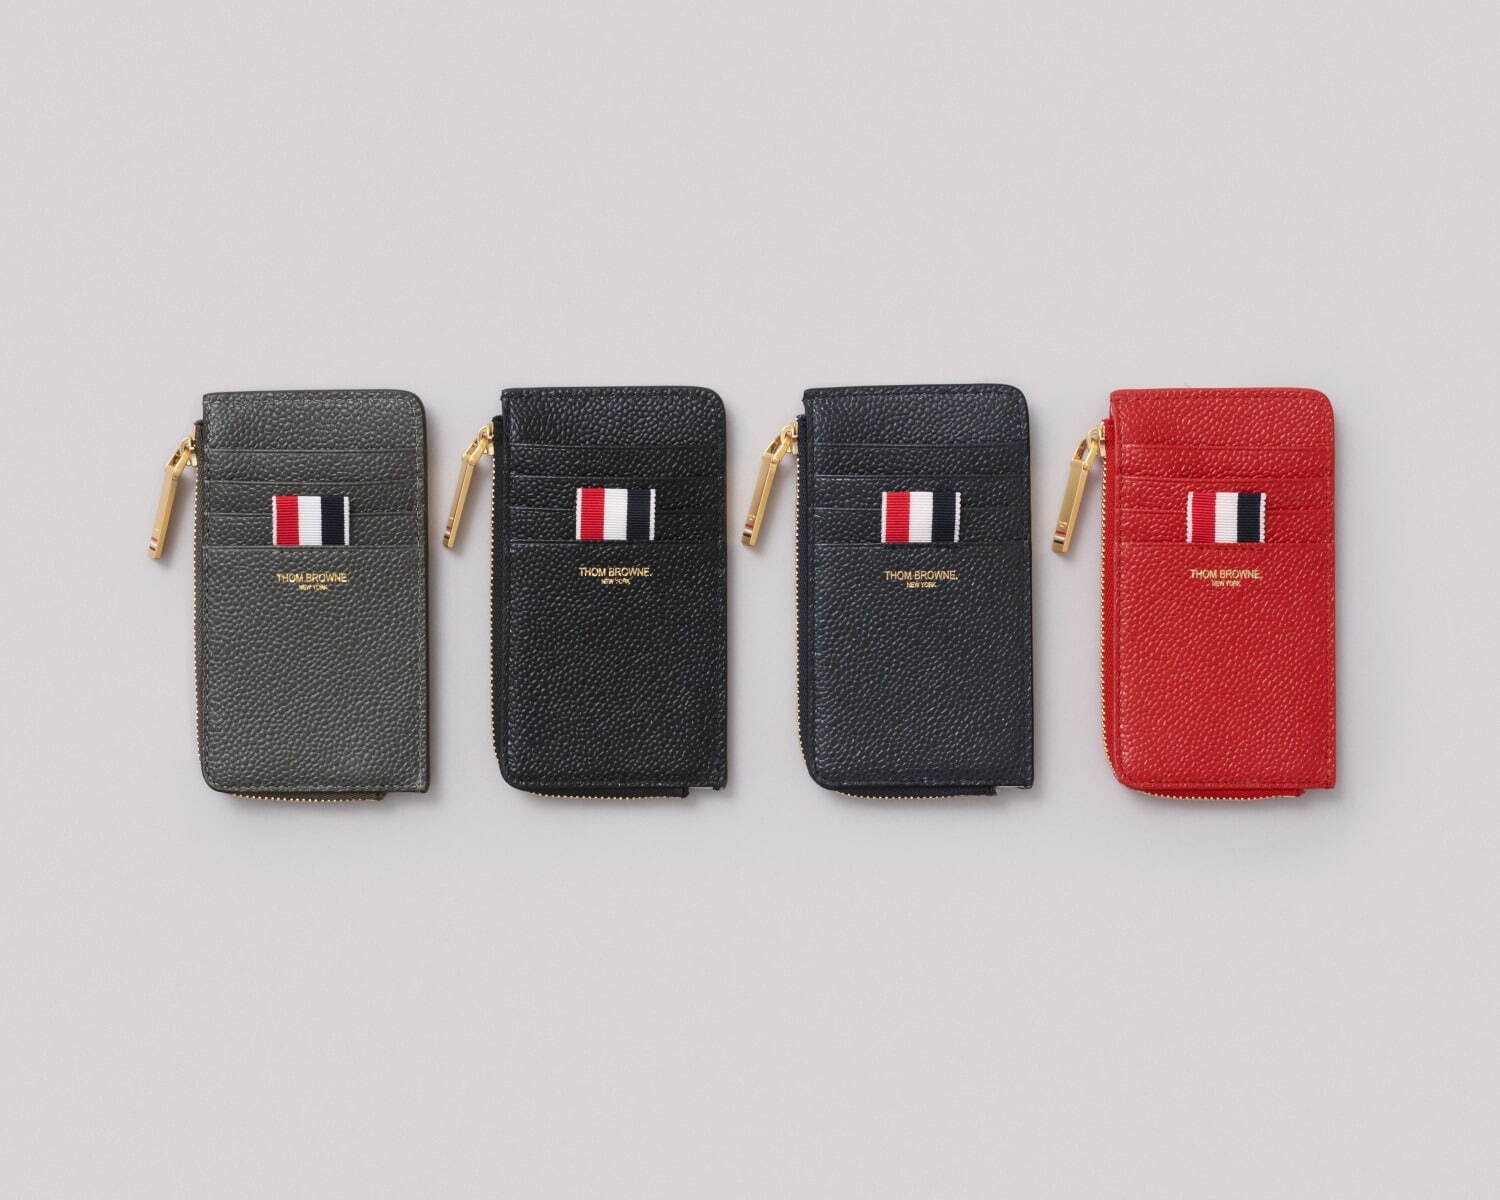 トム ブラウン新作ウォレット、日本限定デザインの“3つ折り財布”に新色